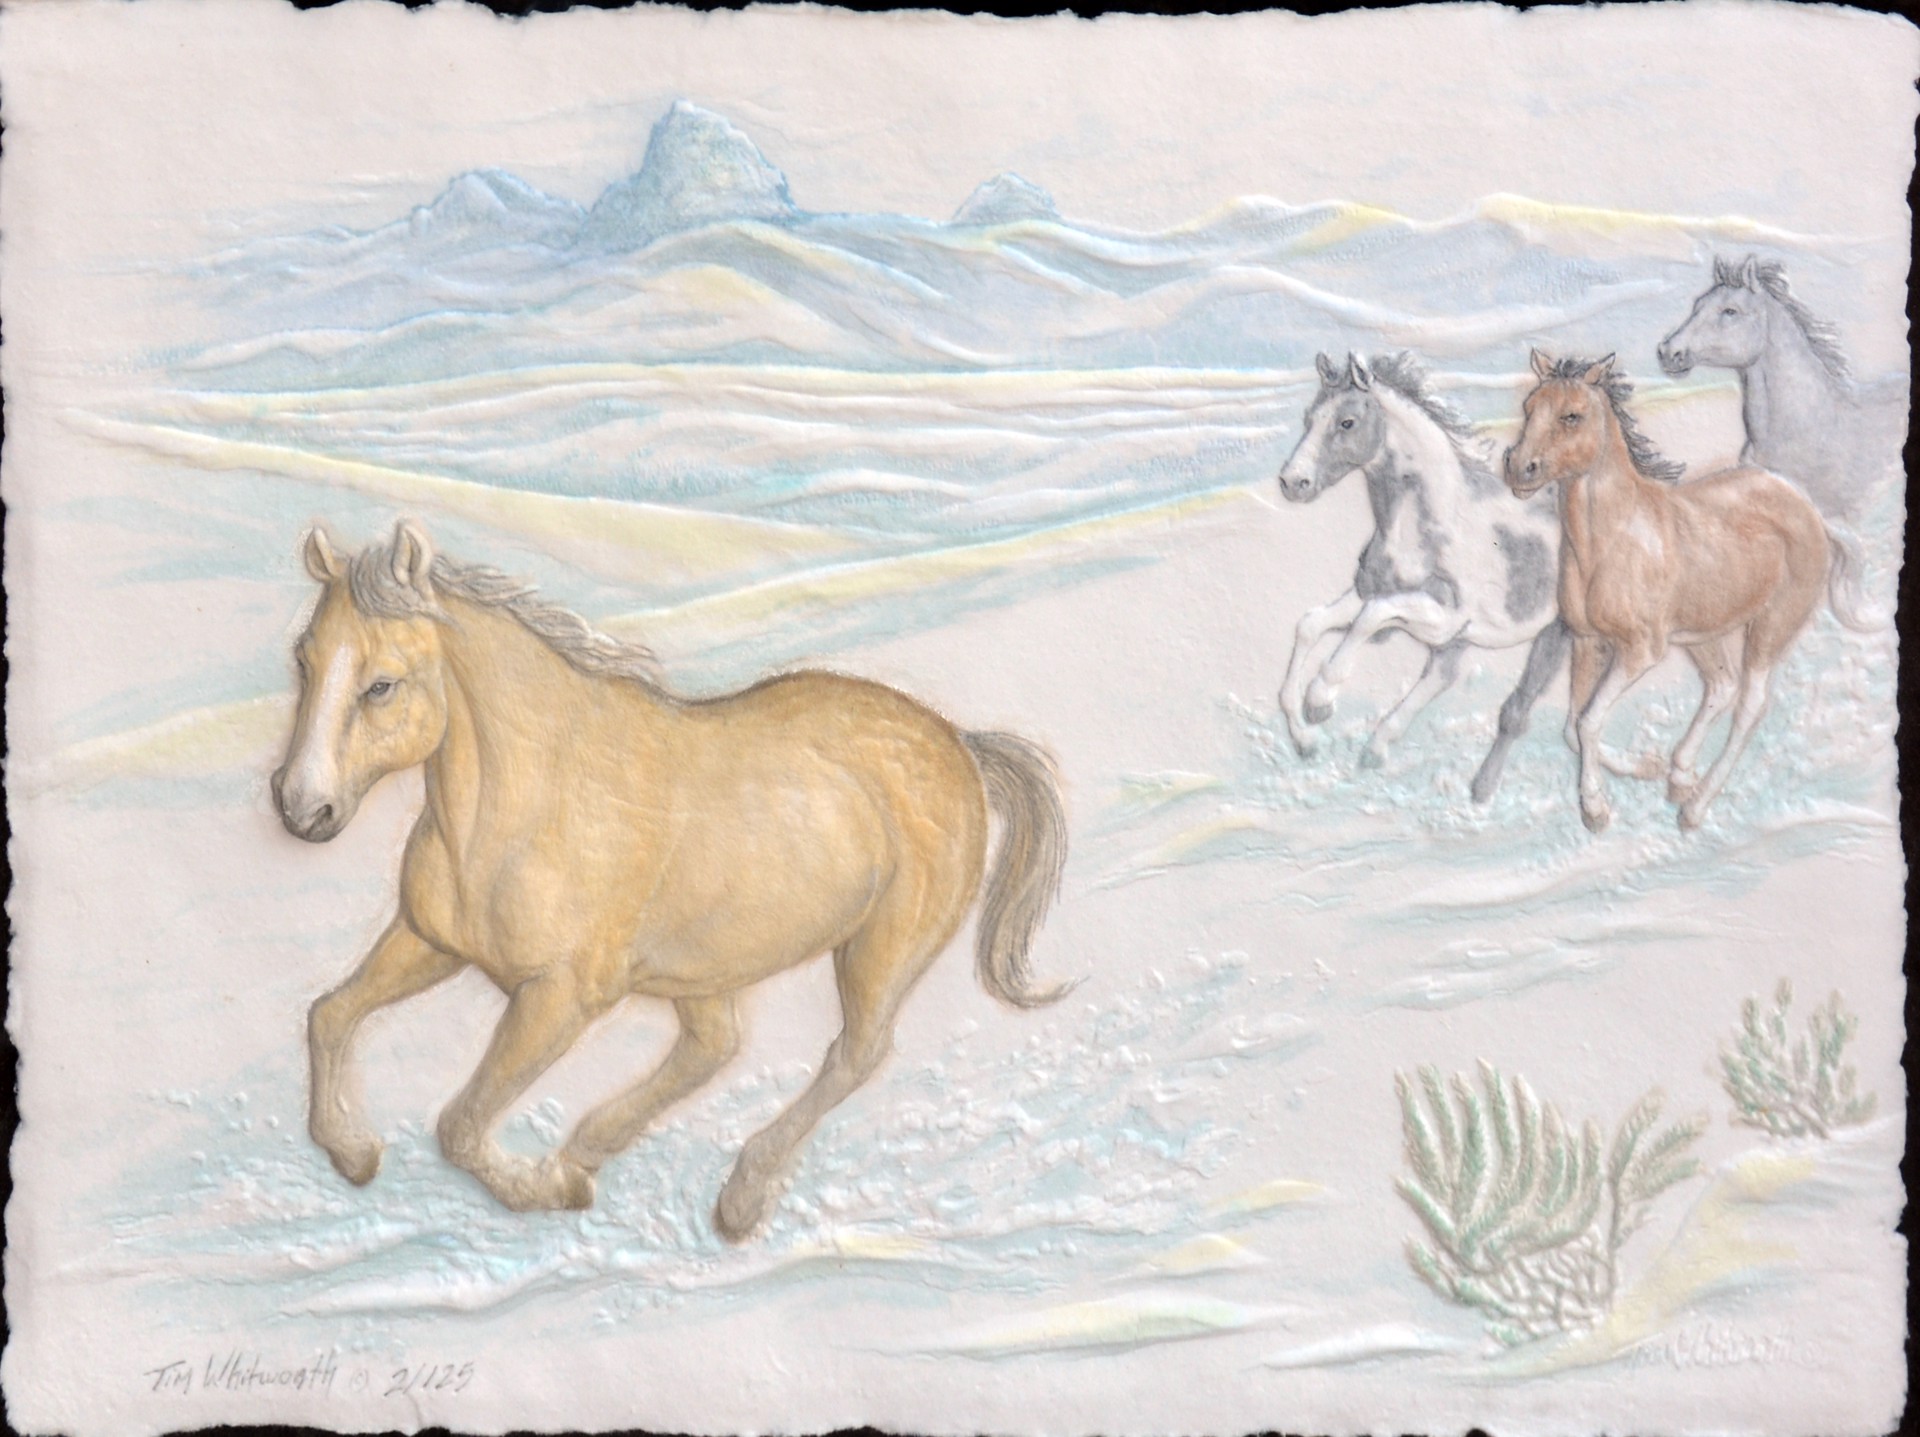 Teton Ponies by Tim Whitworth